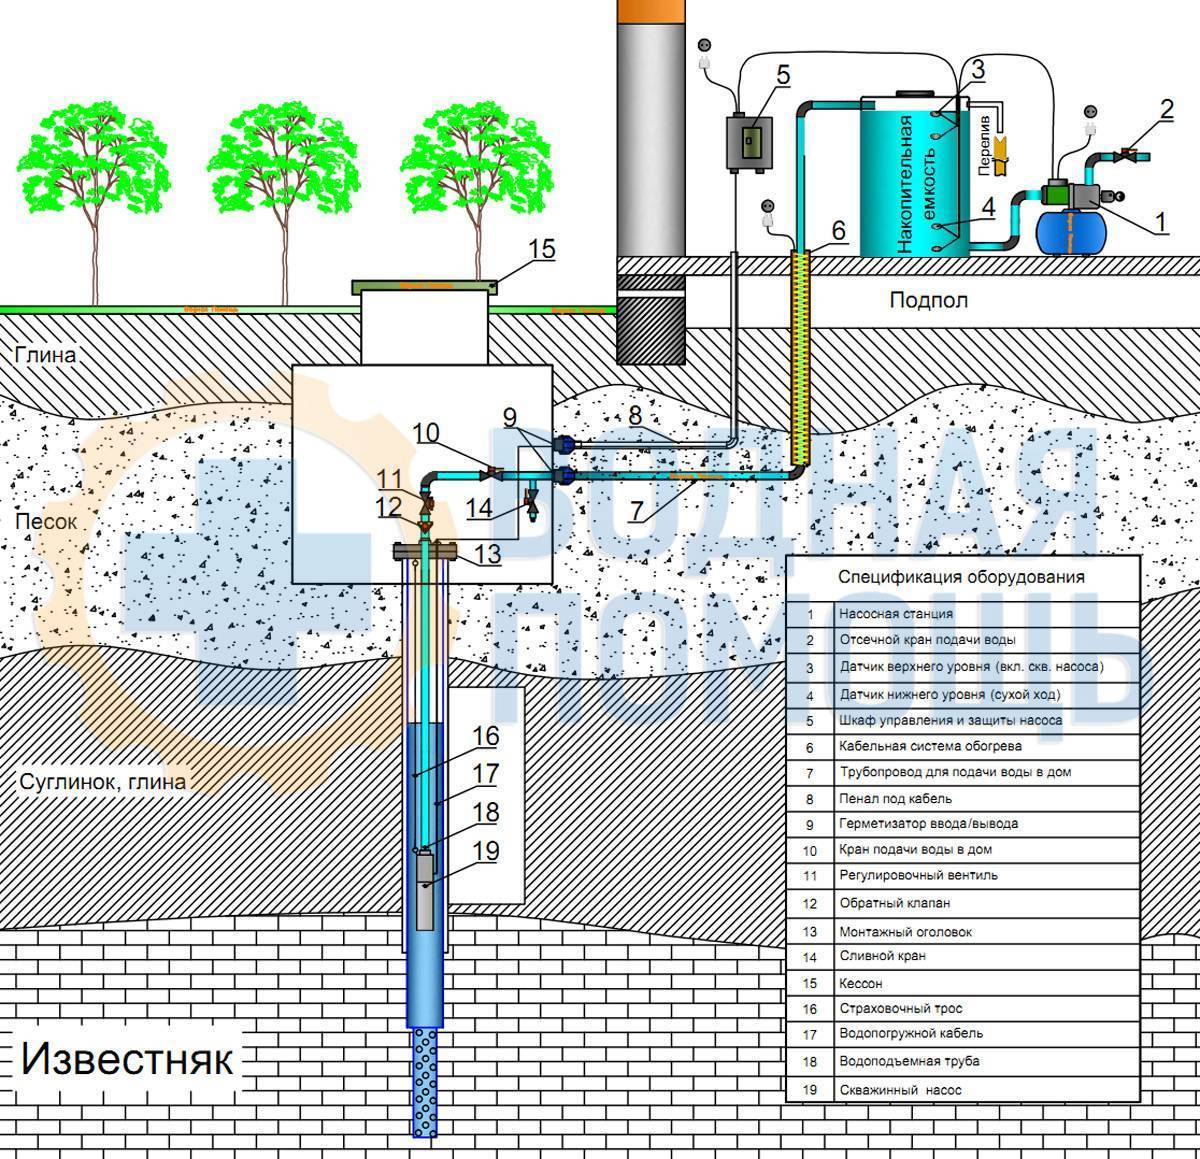 Оборудование для скважины под воду: комплектующие, как выбрать, монтаж, цены